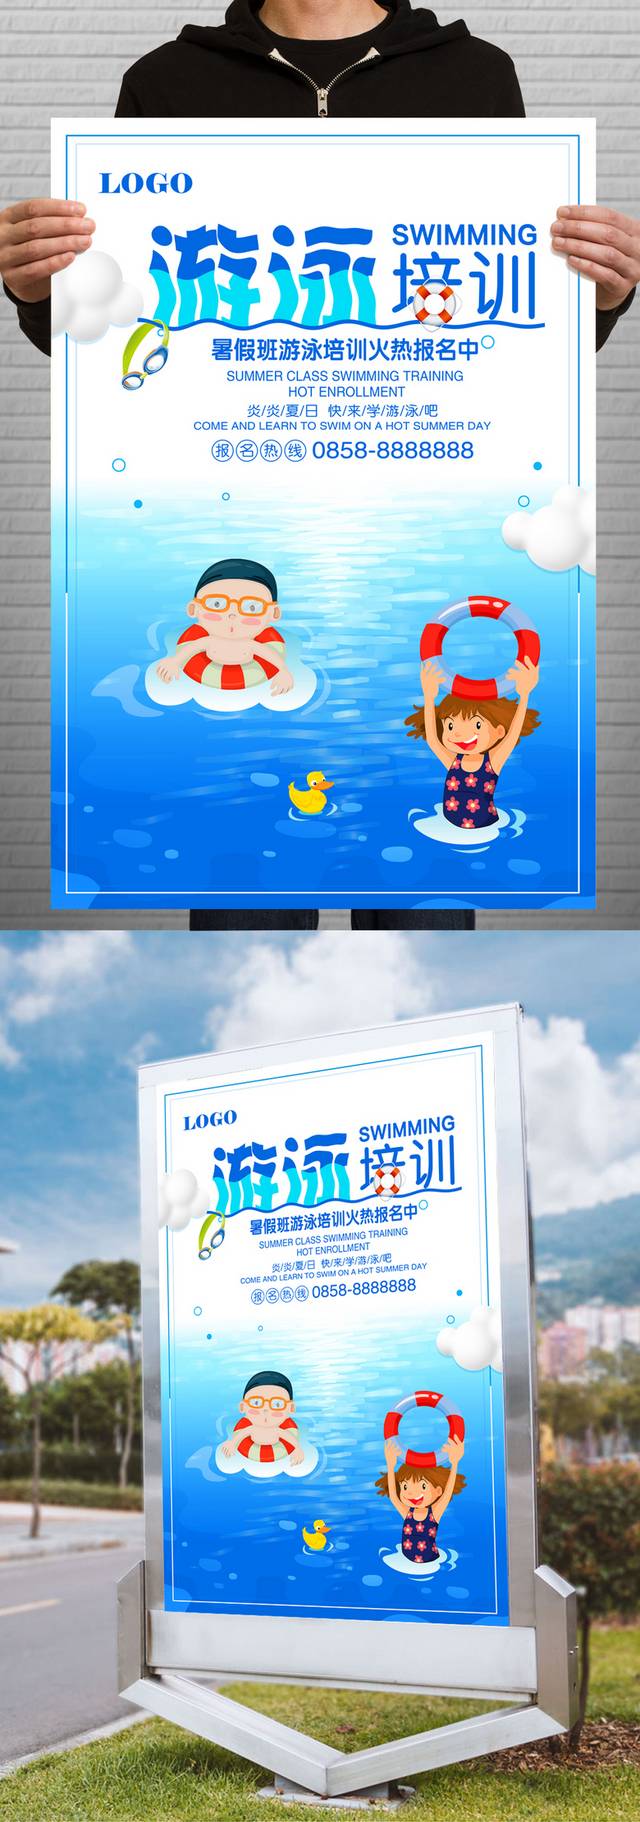 游泳培训班宣传海报模板